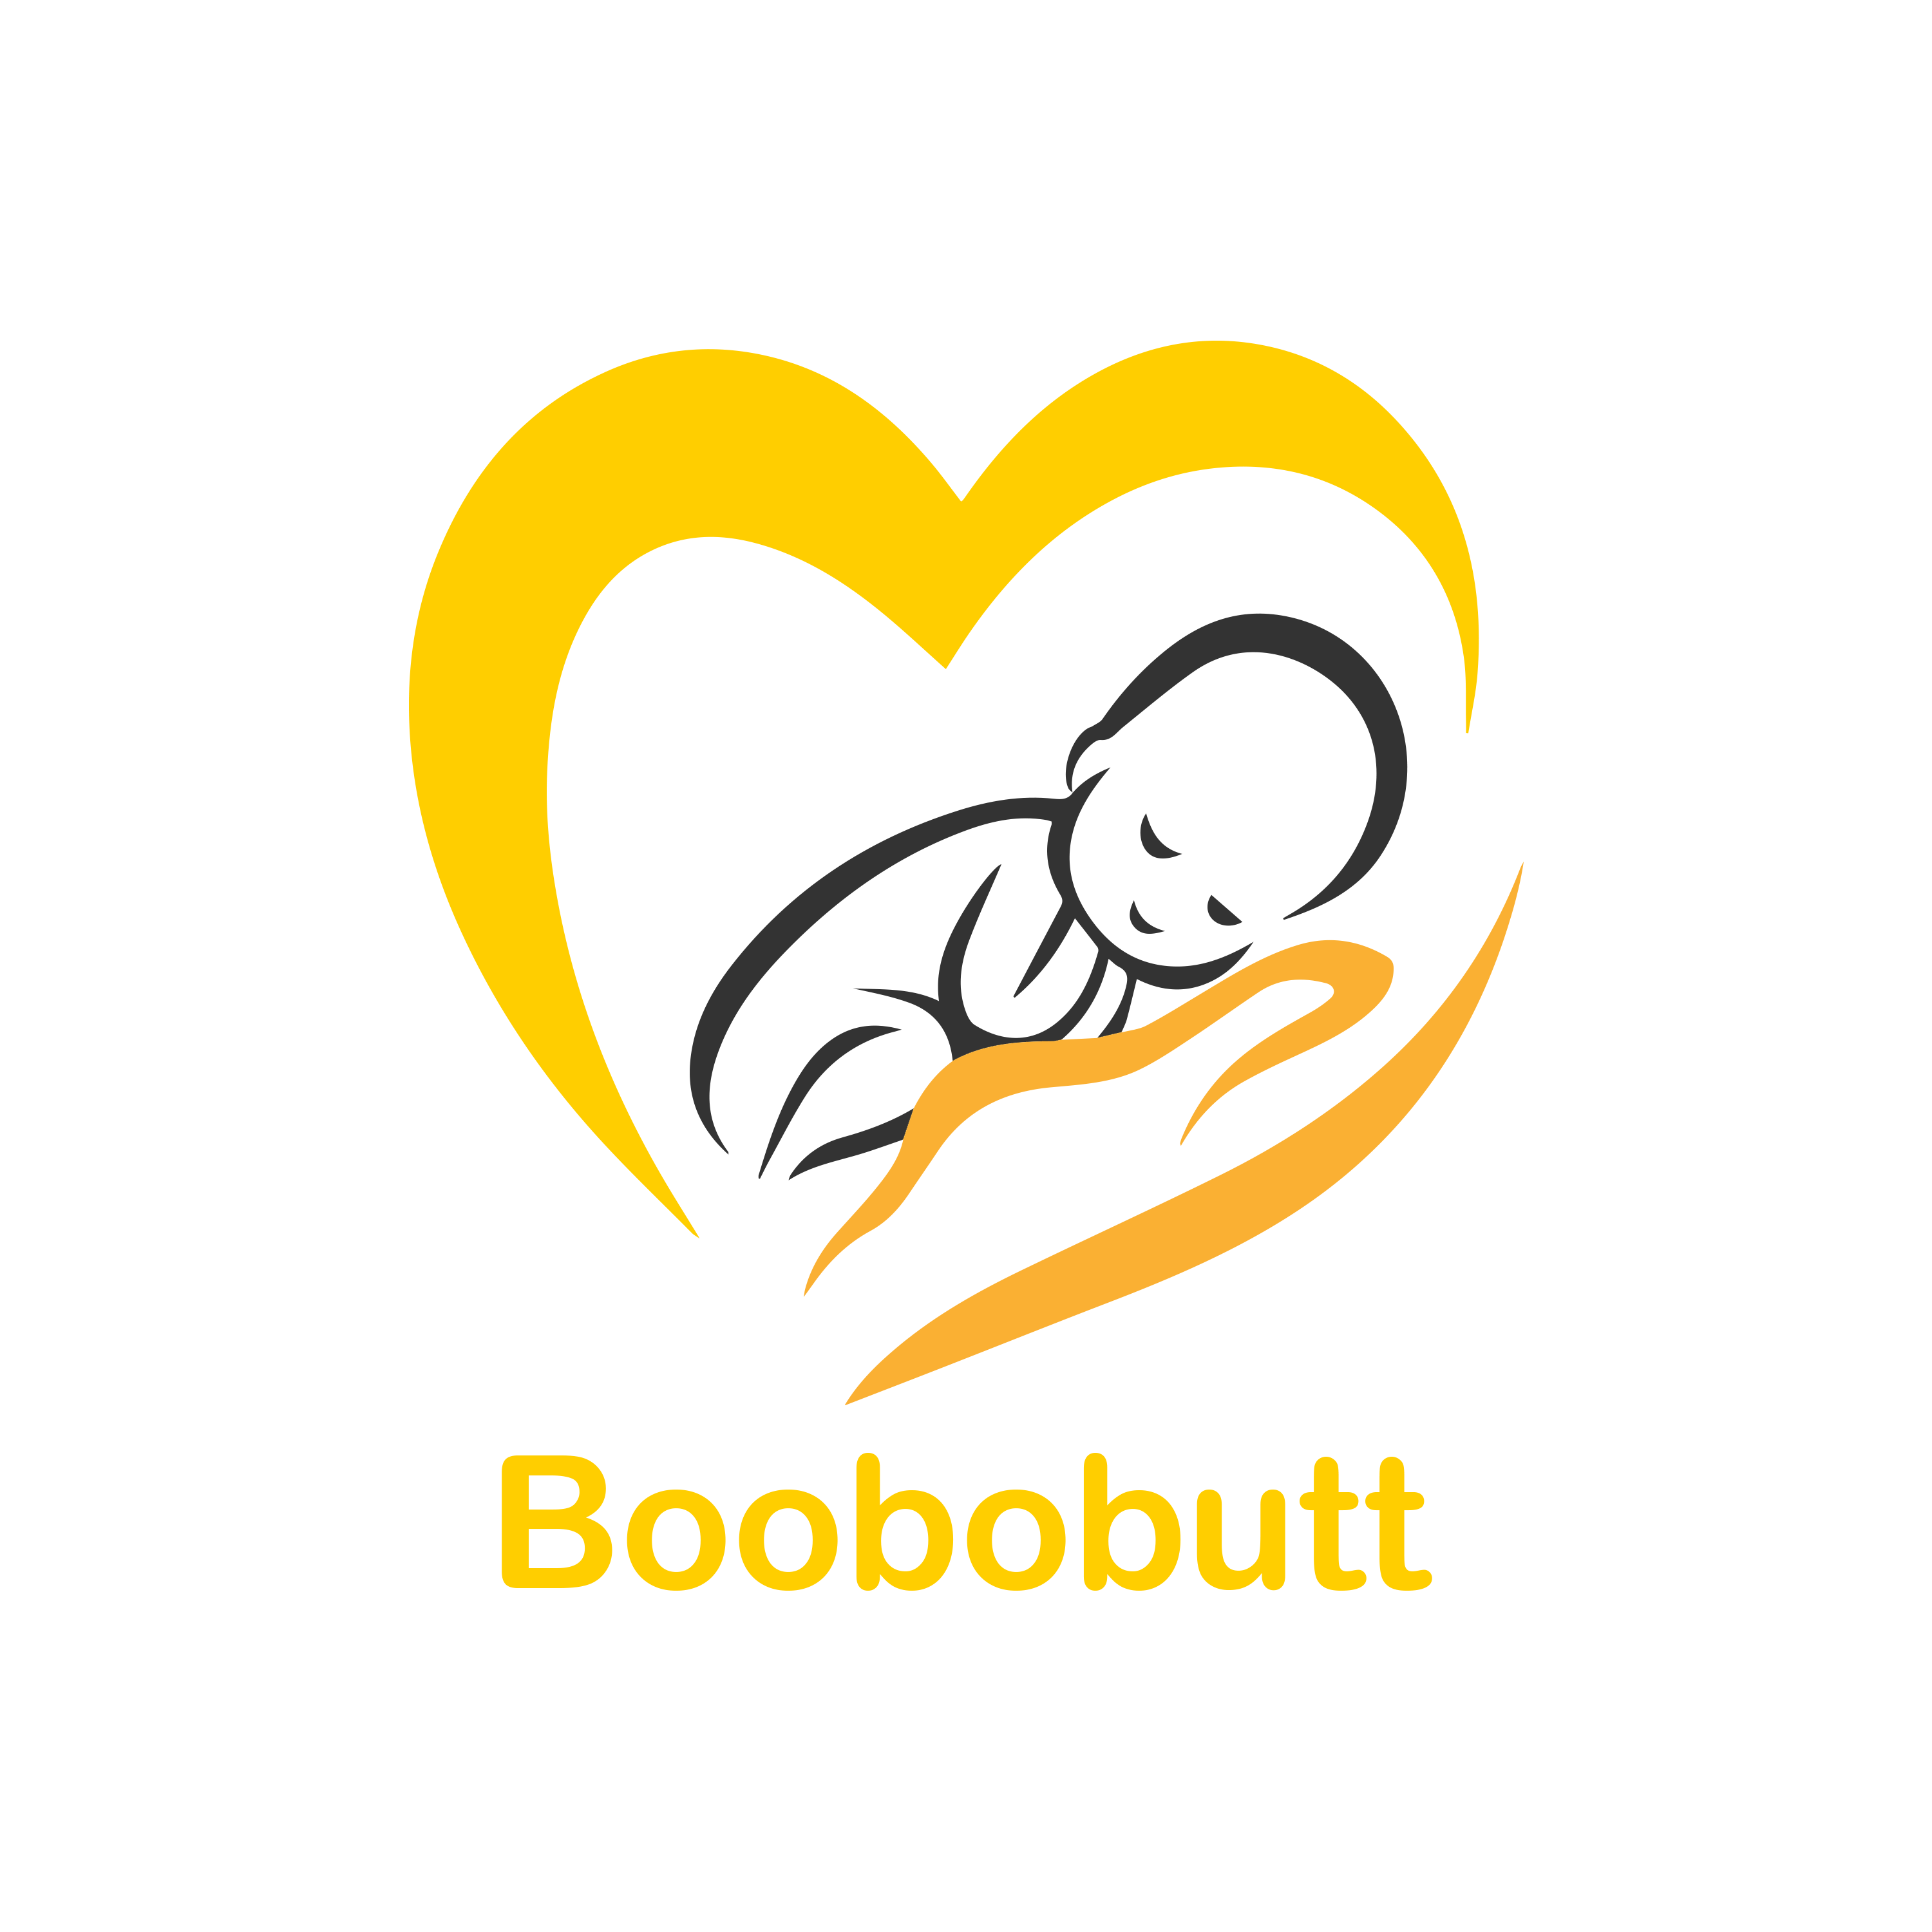 Boobobutt logo